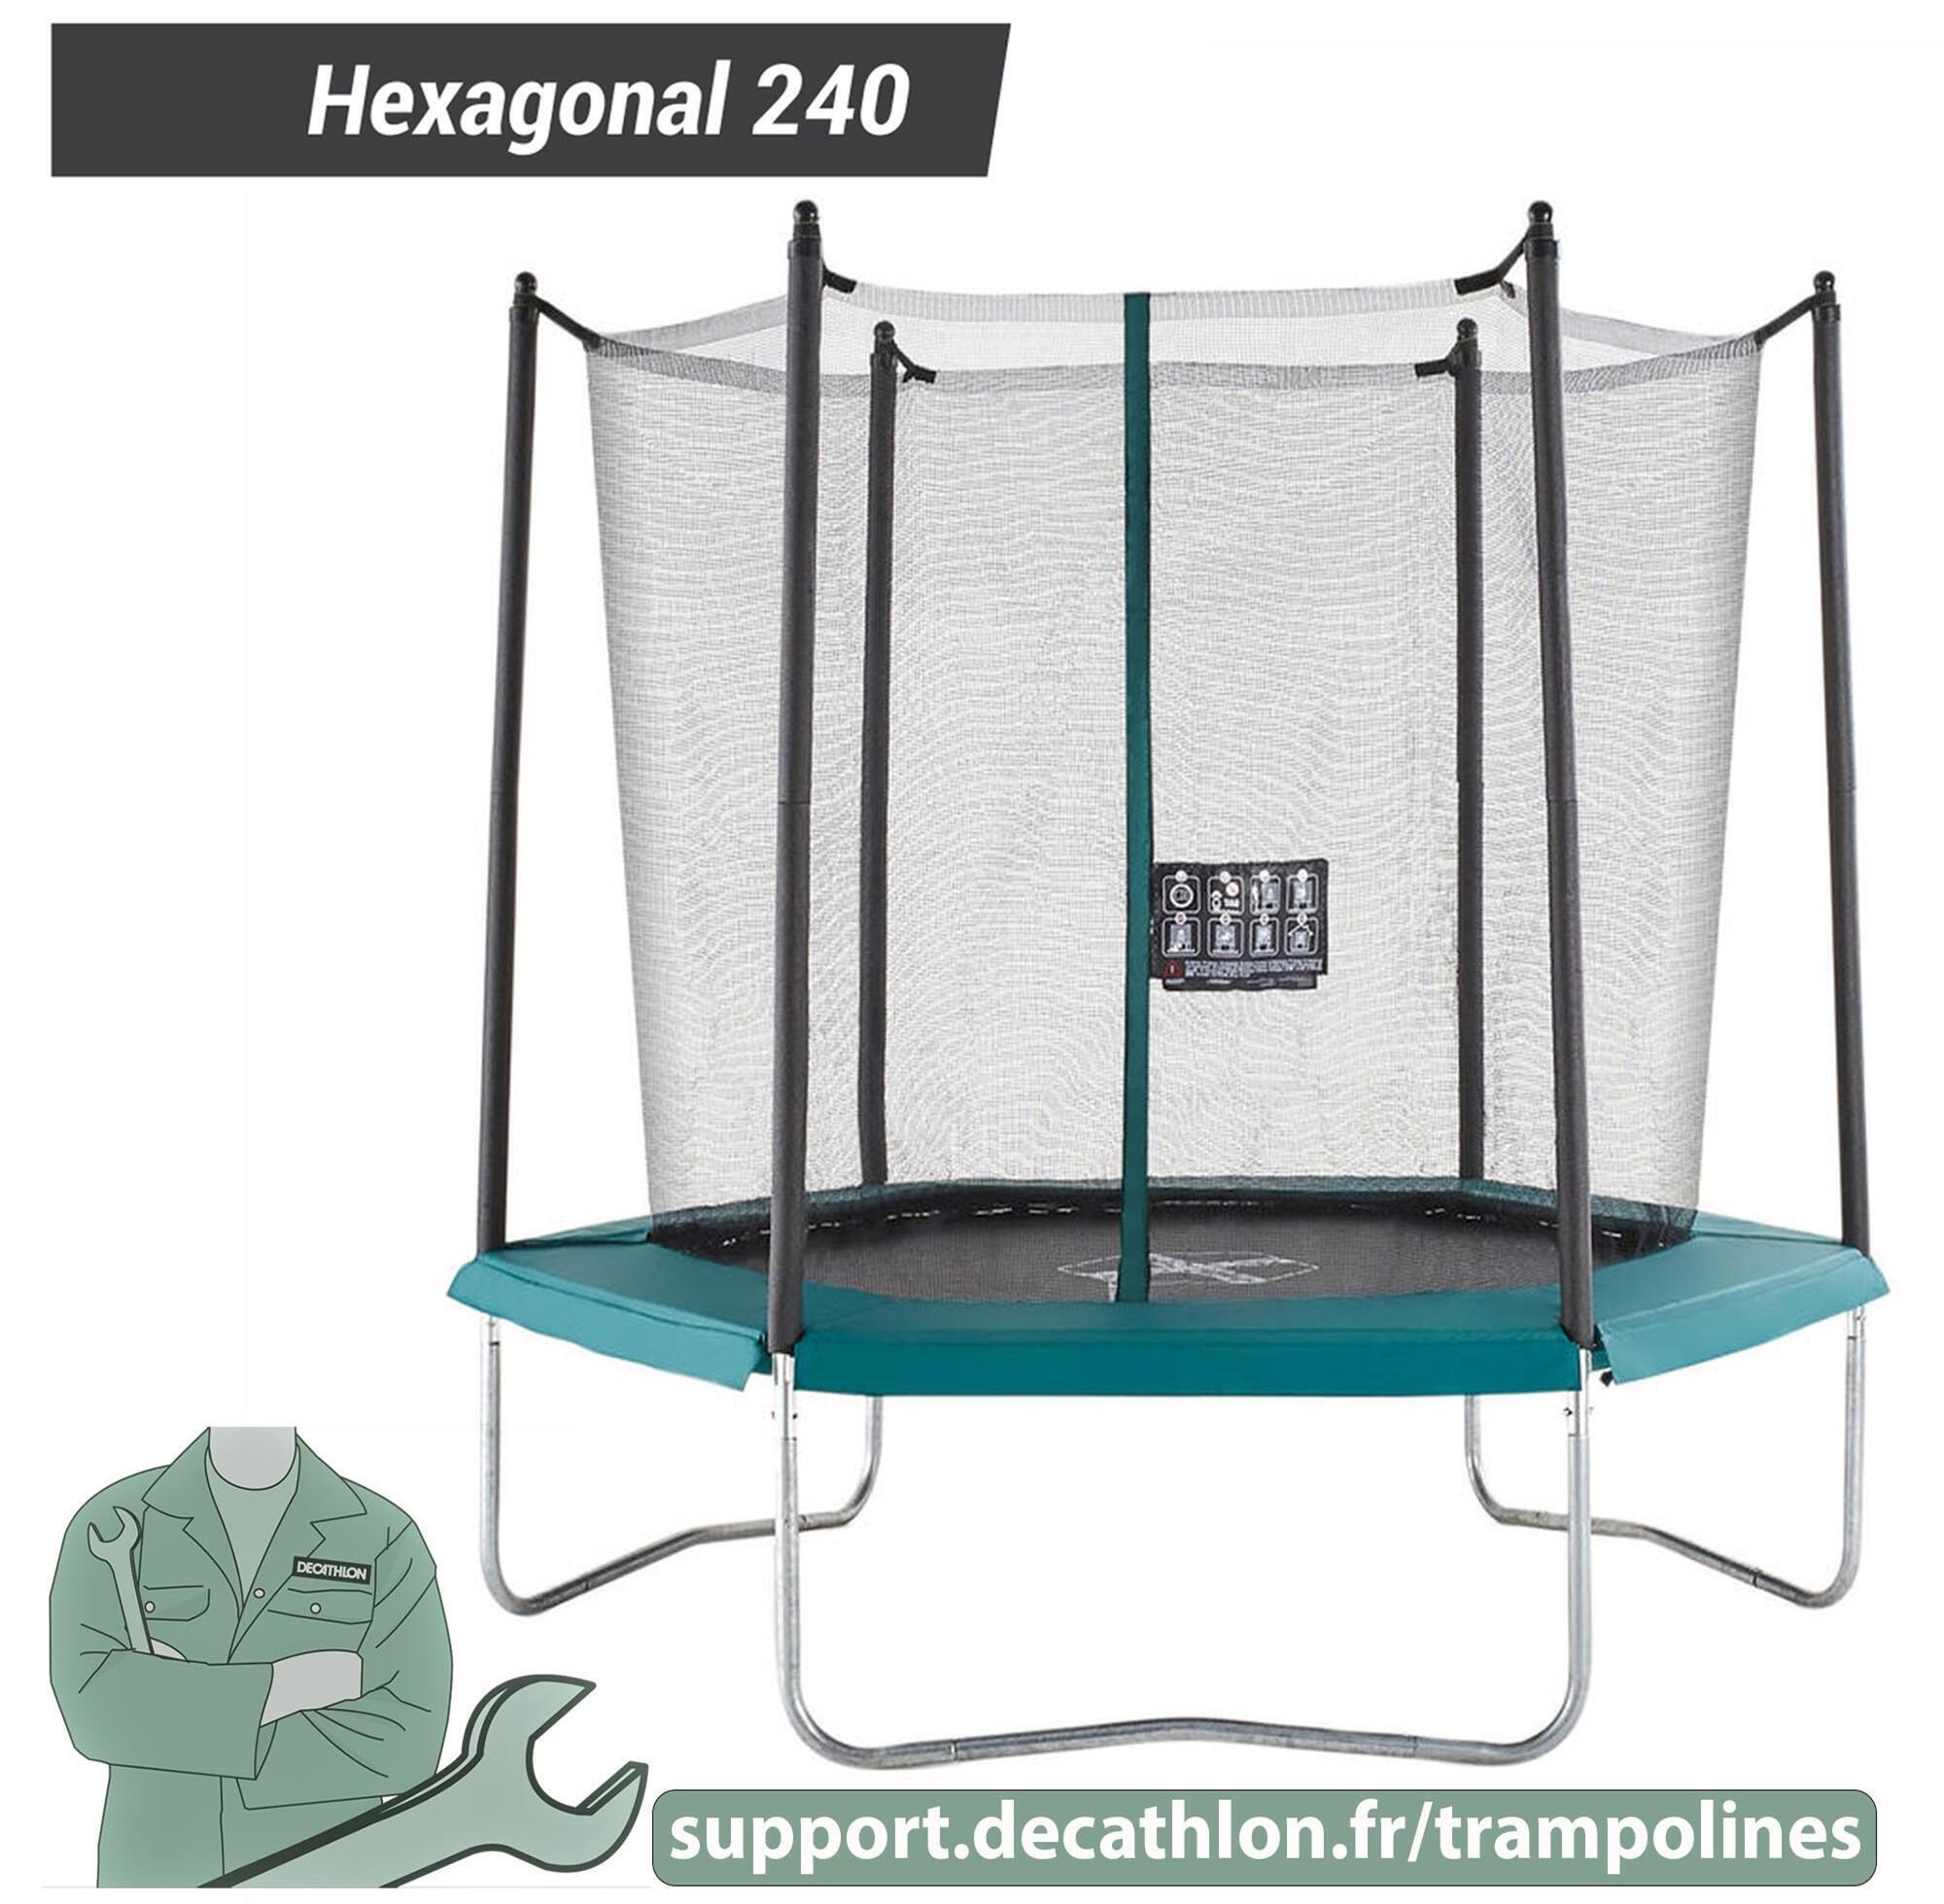 Hexa 240 Trampoline